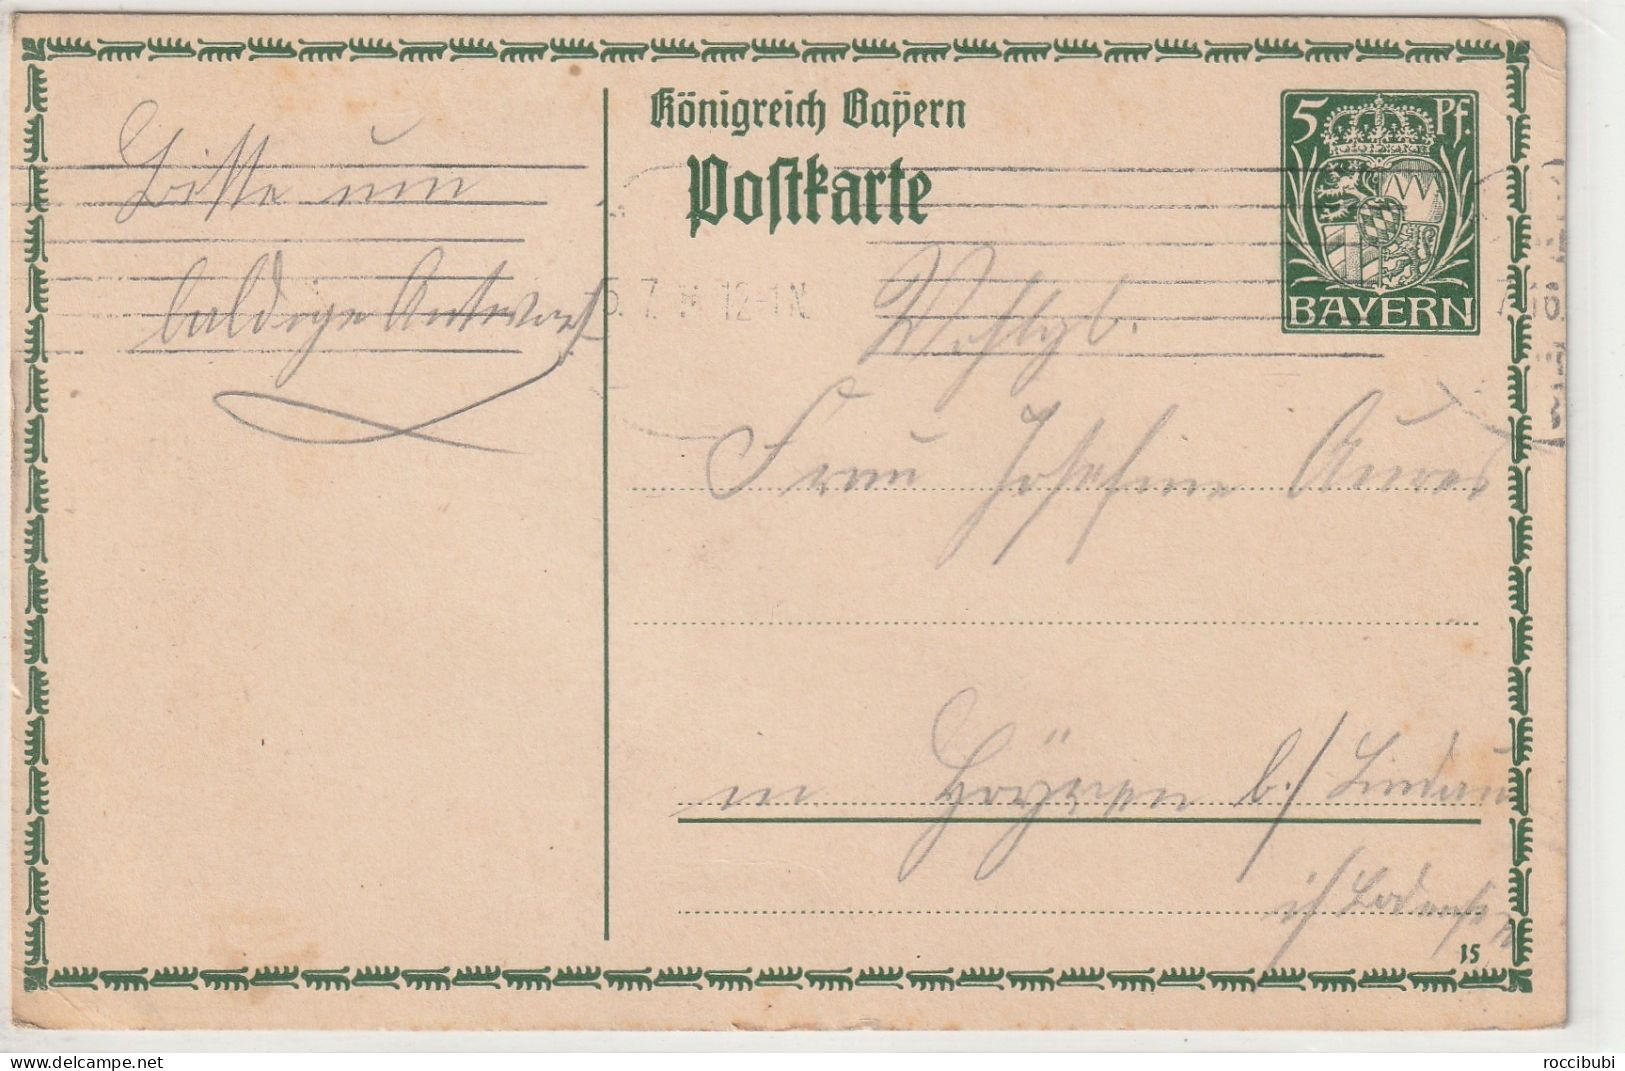 Königreich Bayern - Postal  Stationery